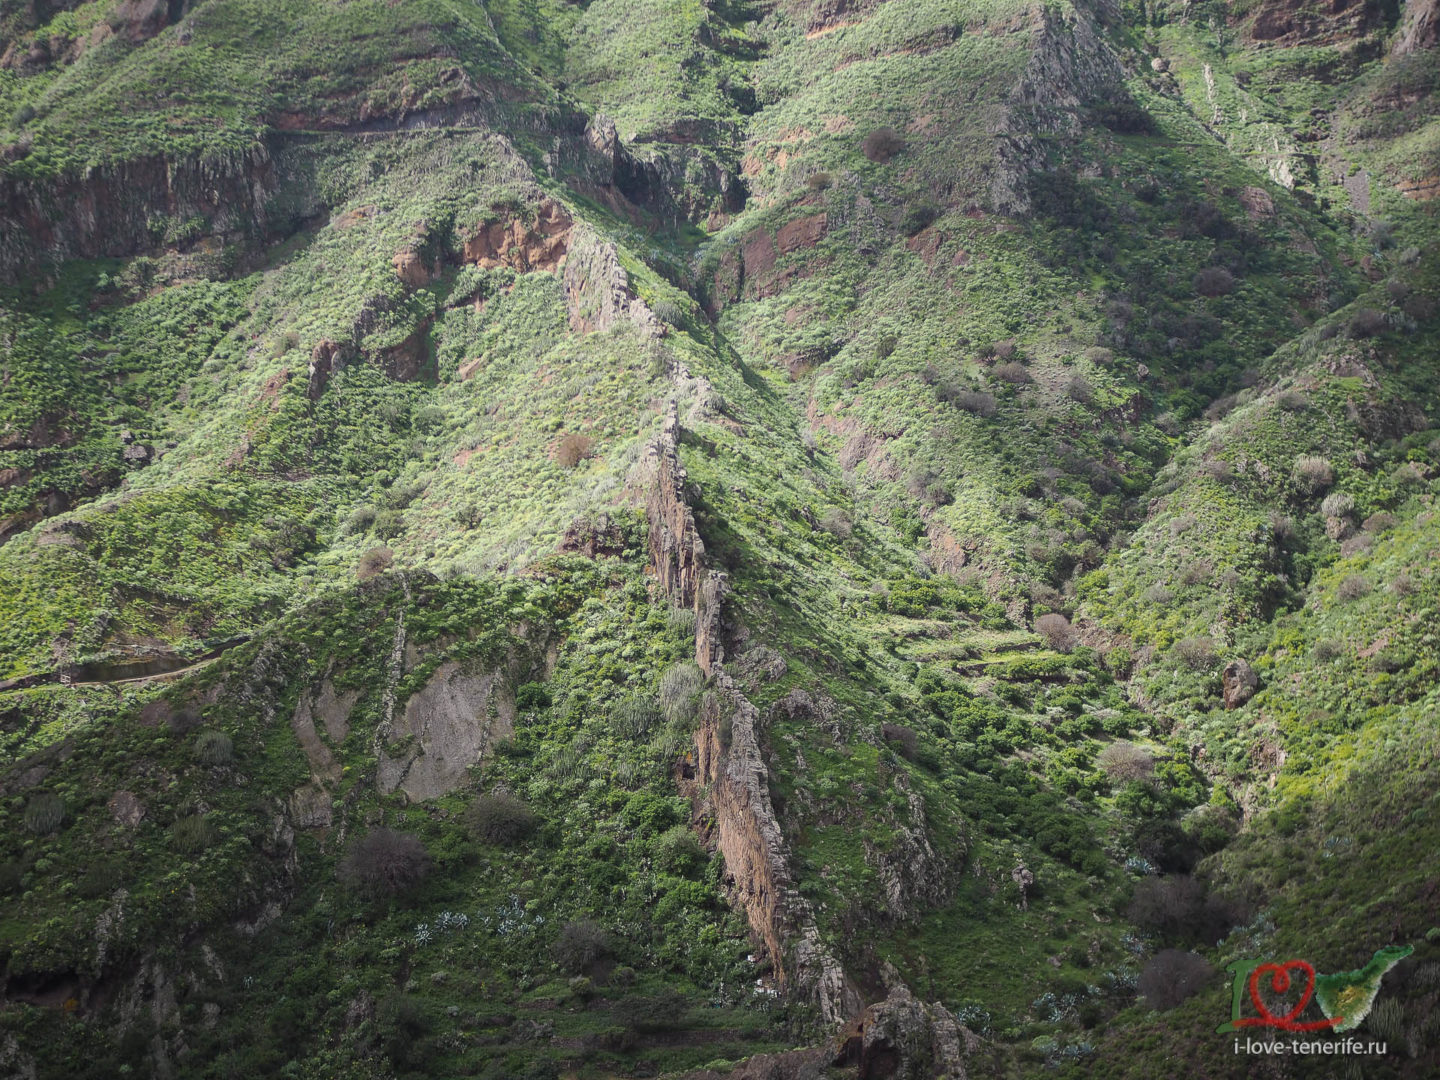 Вулканические дайки - вертикальные базальтовые сверхплотные породы, февраль 2022, хайкинг на Тенерифе